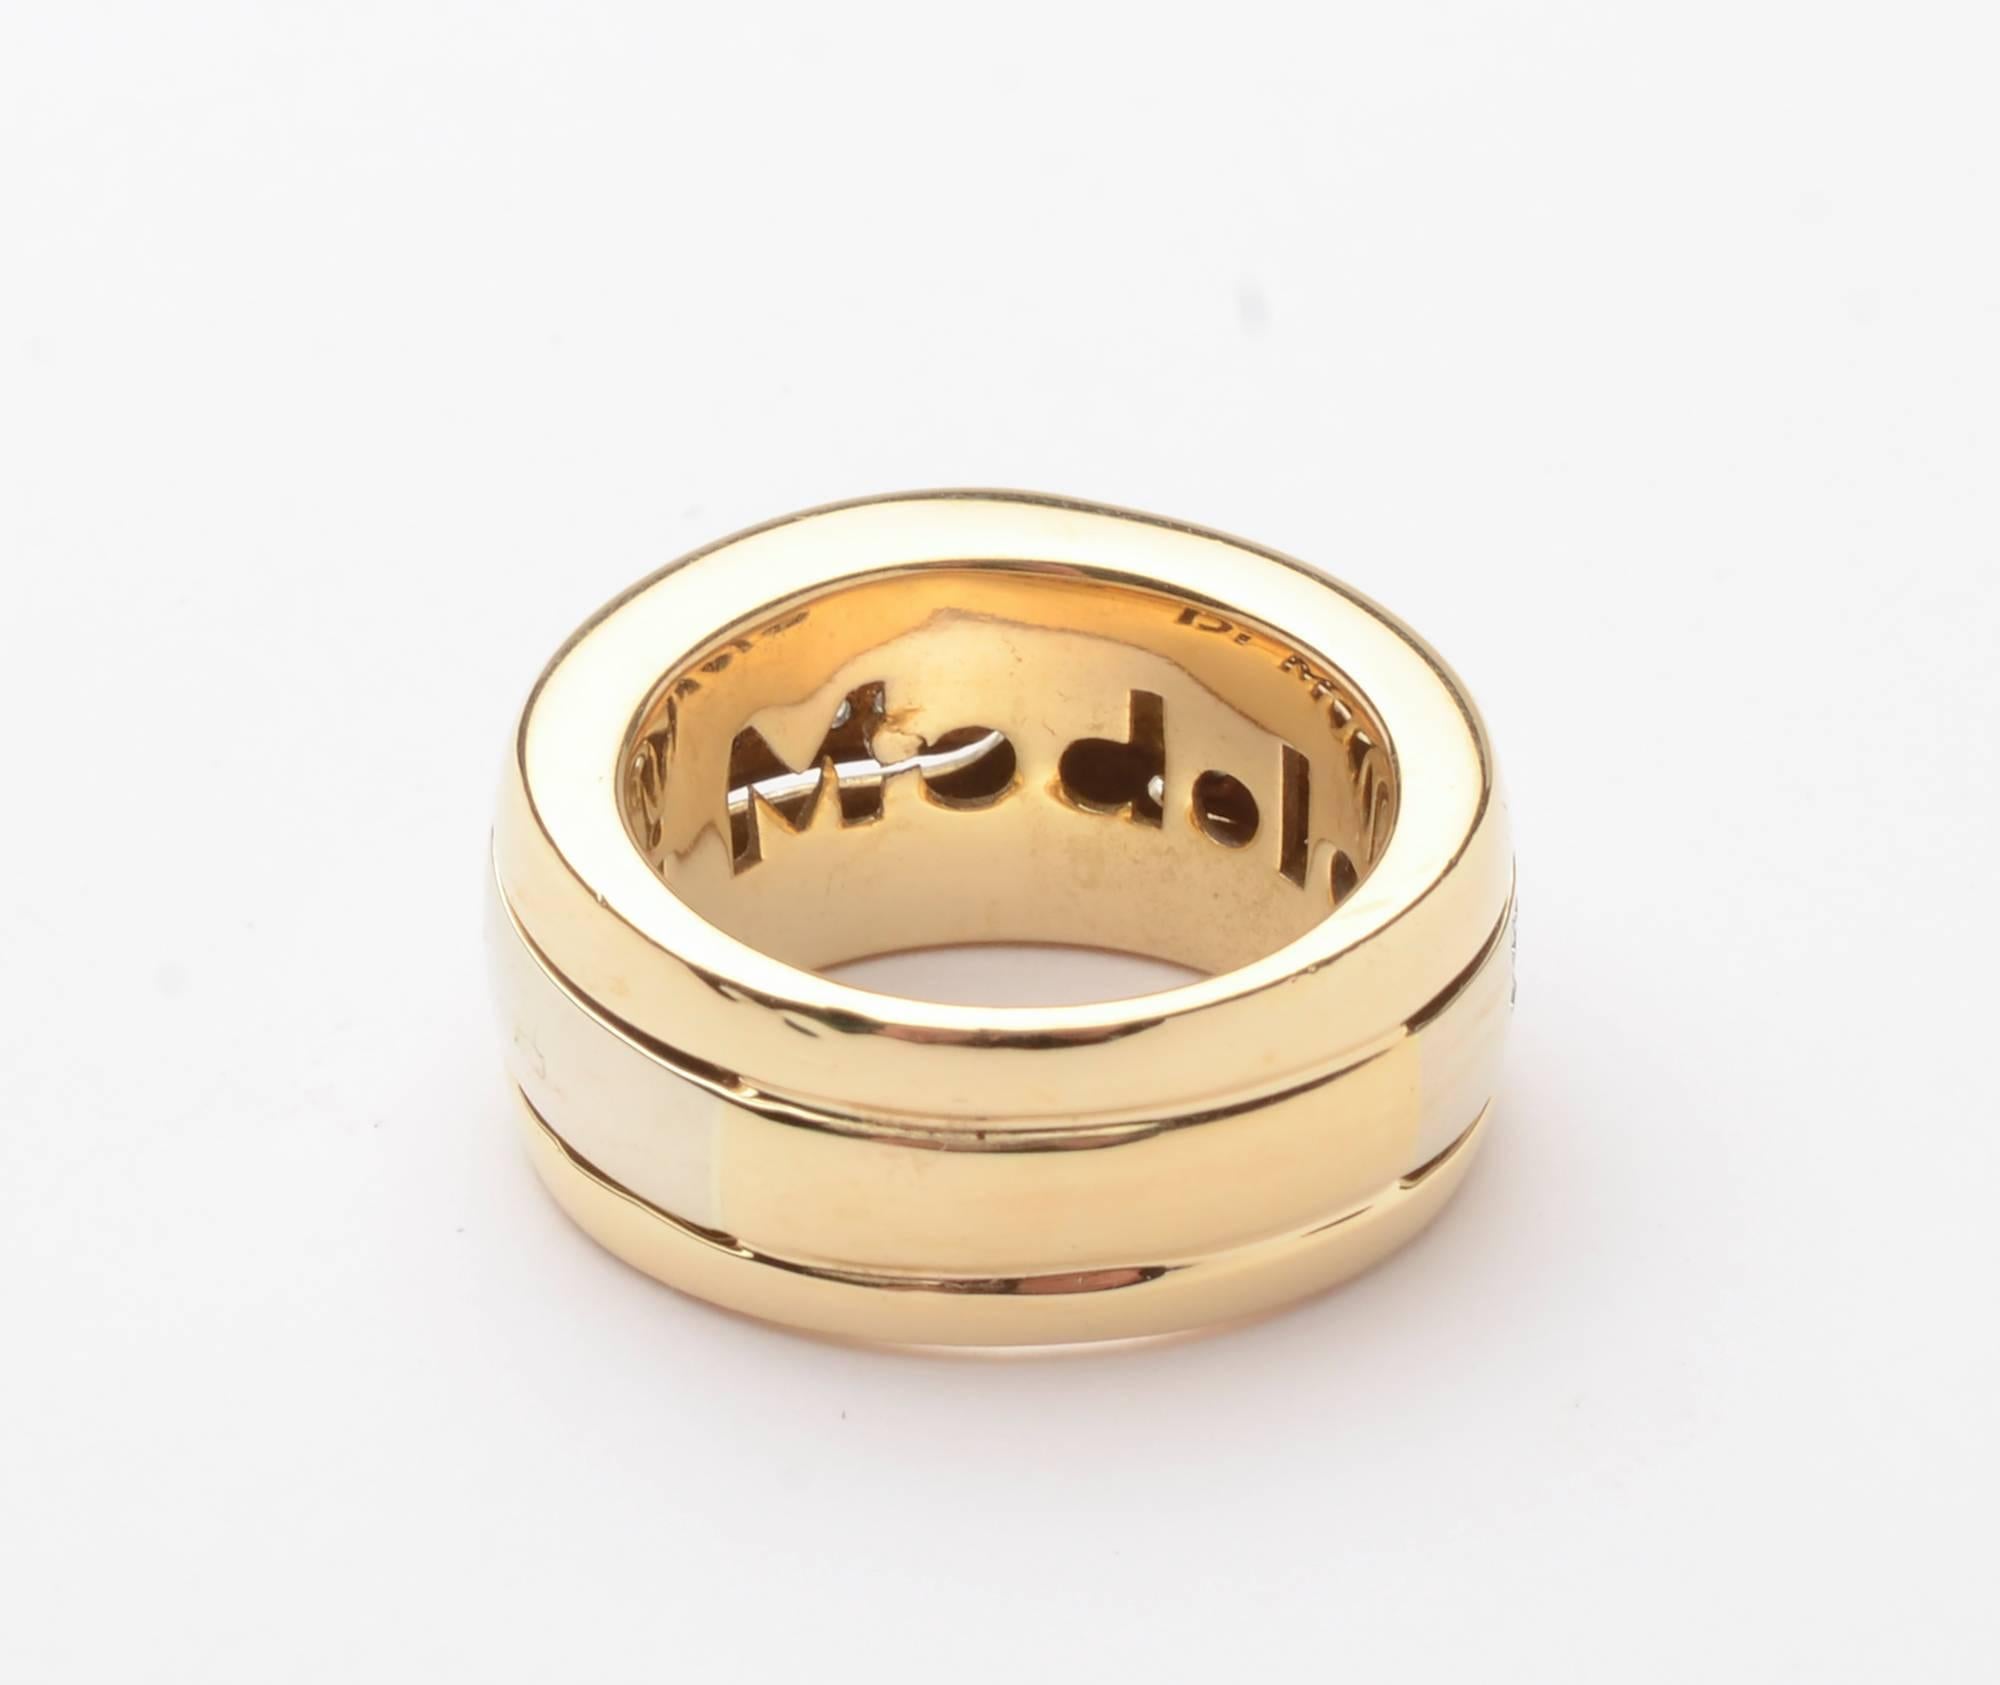 Il s'agit d'une importante bague à anneau en or et diamants de Di Modolo. Il est créé pour donner l'impression qu'une moitié recouvre l'autre, mais en réalité, ce n'est pas le cas. Elle est fabriquée en or jaune 18 carats et les diamants sont sertis